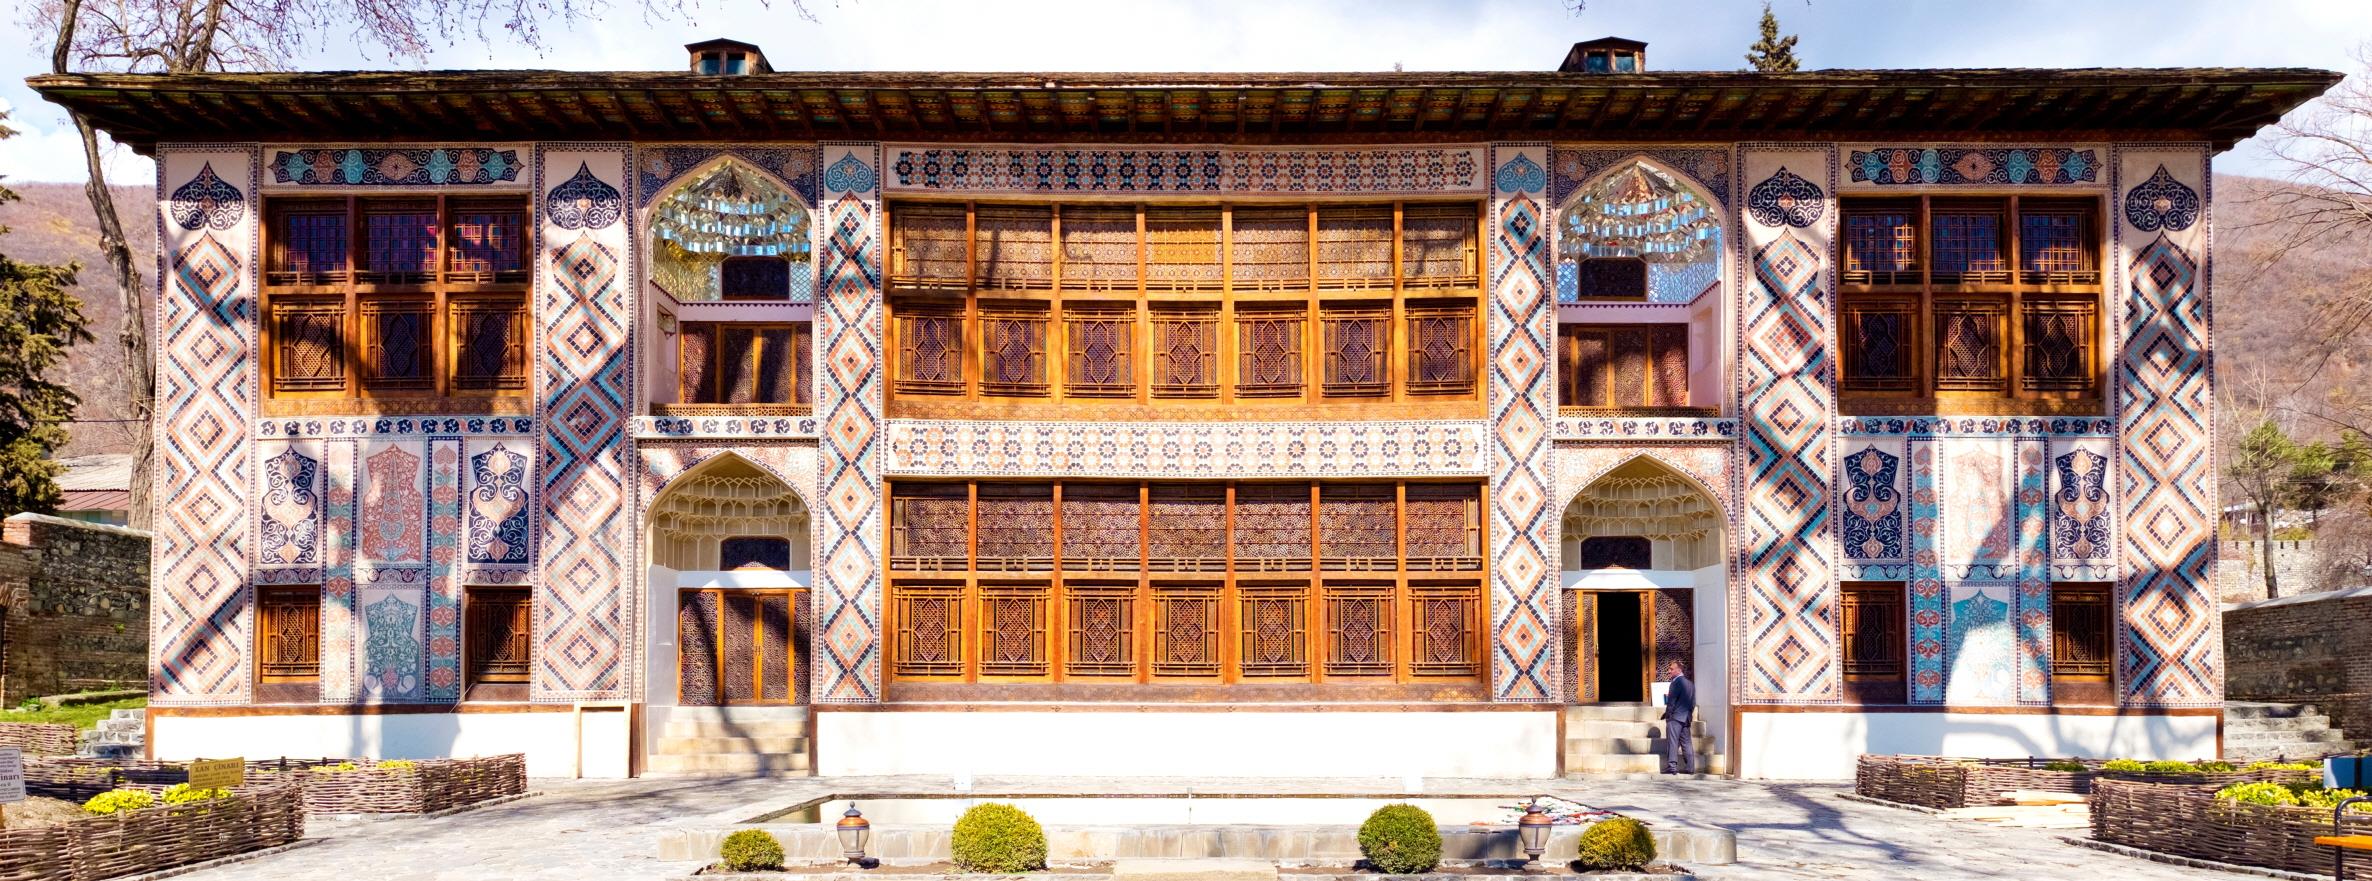 칸사라이 궁전  Palace of Shaki Khans